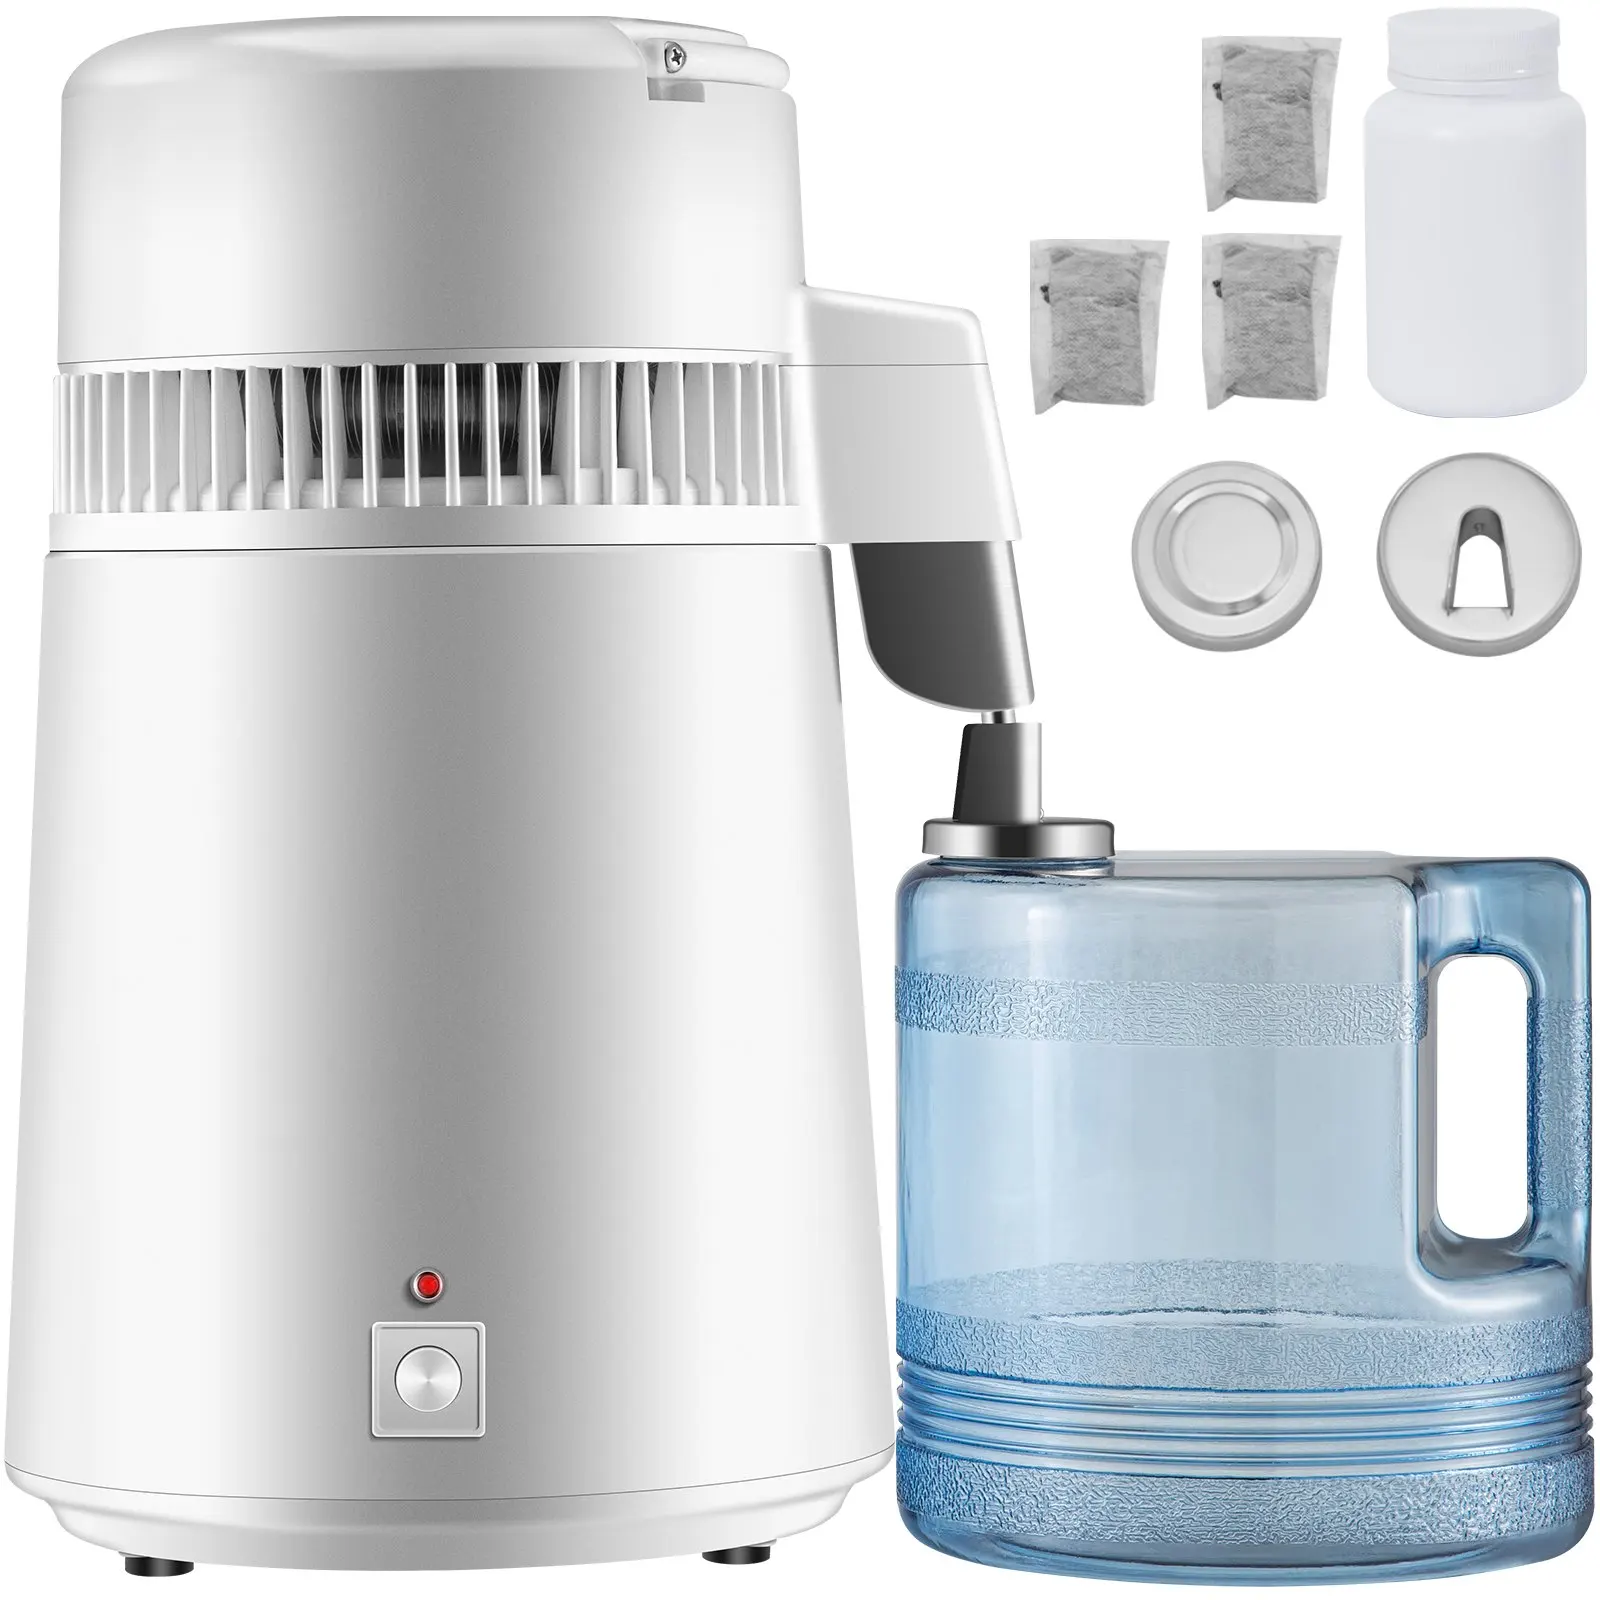 4l-water-distiller-purifier-filter-dispenser-heating-drinking-bottle-softener-304-stainless-steel-750w-water-distiller-machine